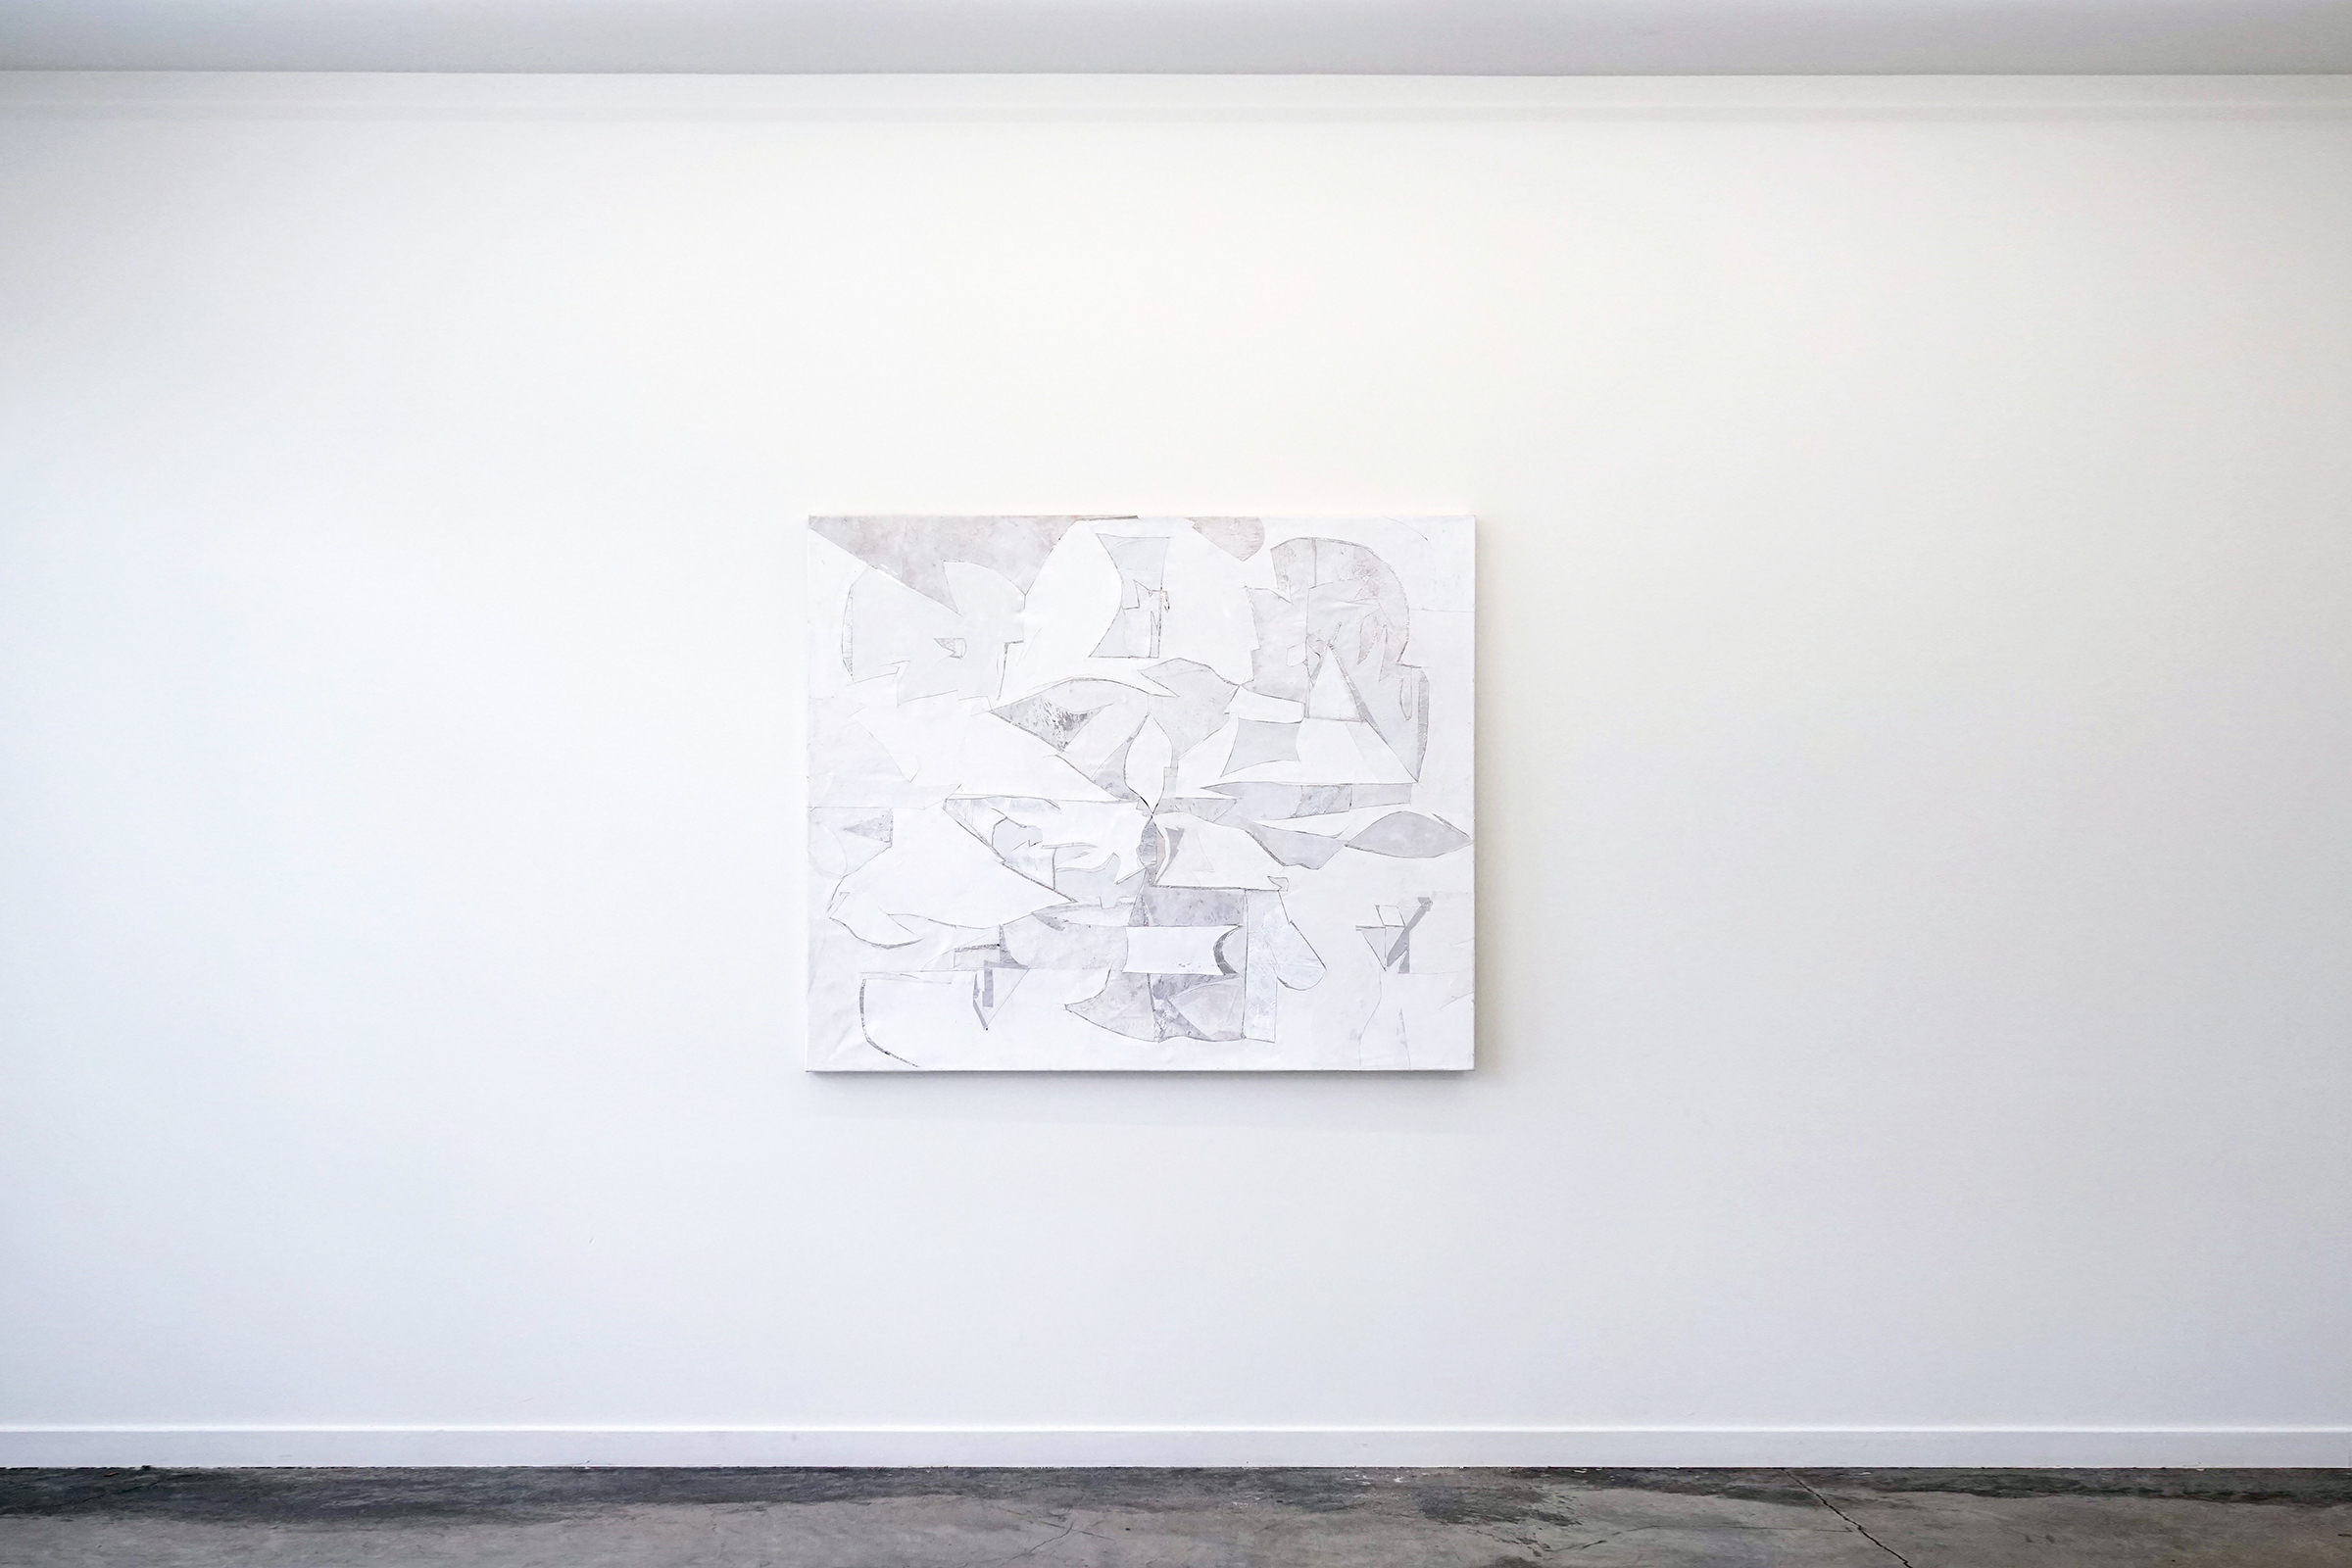   RYAN WALLACE   Lenakaeia 2 , enamel, acrylic, canvas, linen, aluminum, fiberglass, 48" x 58", 2017 